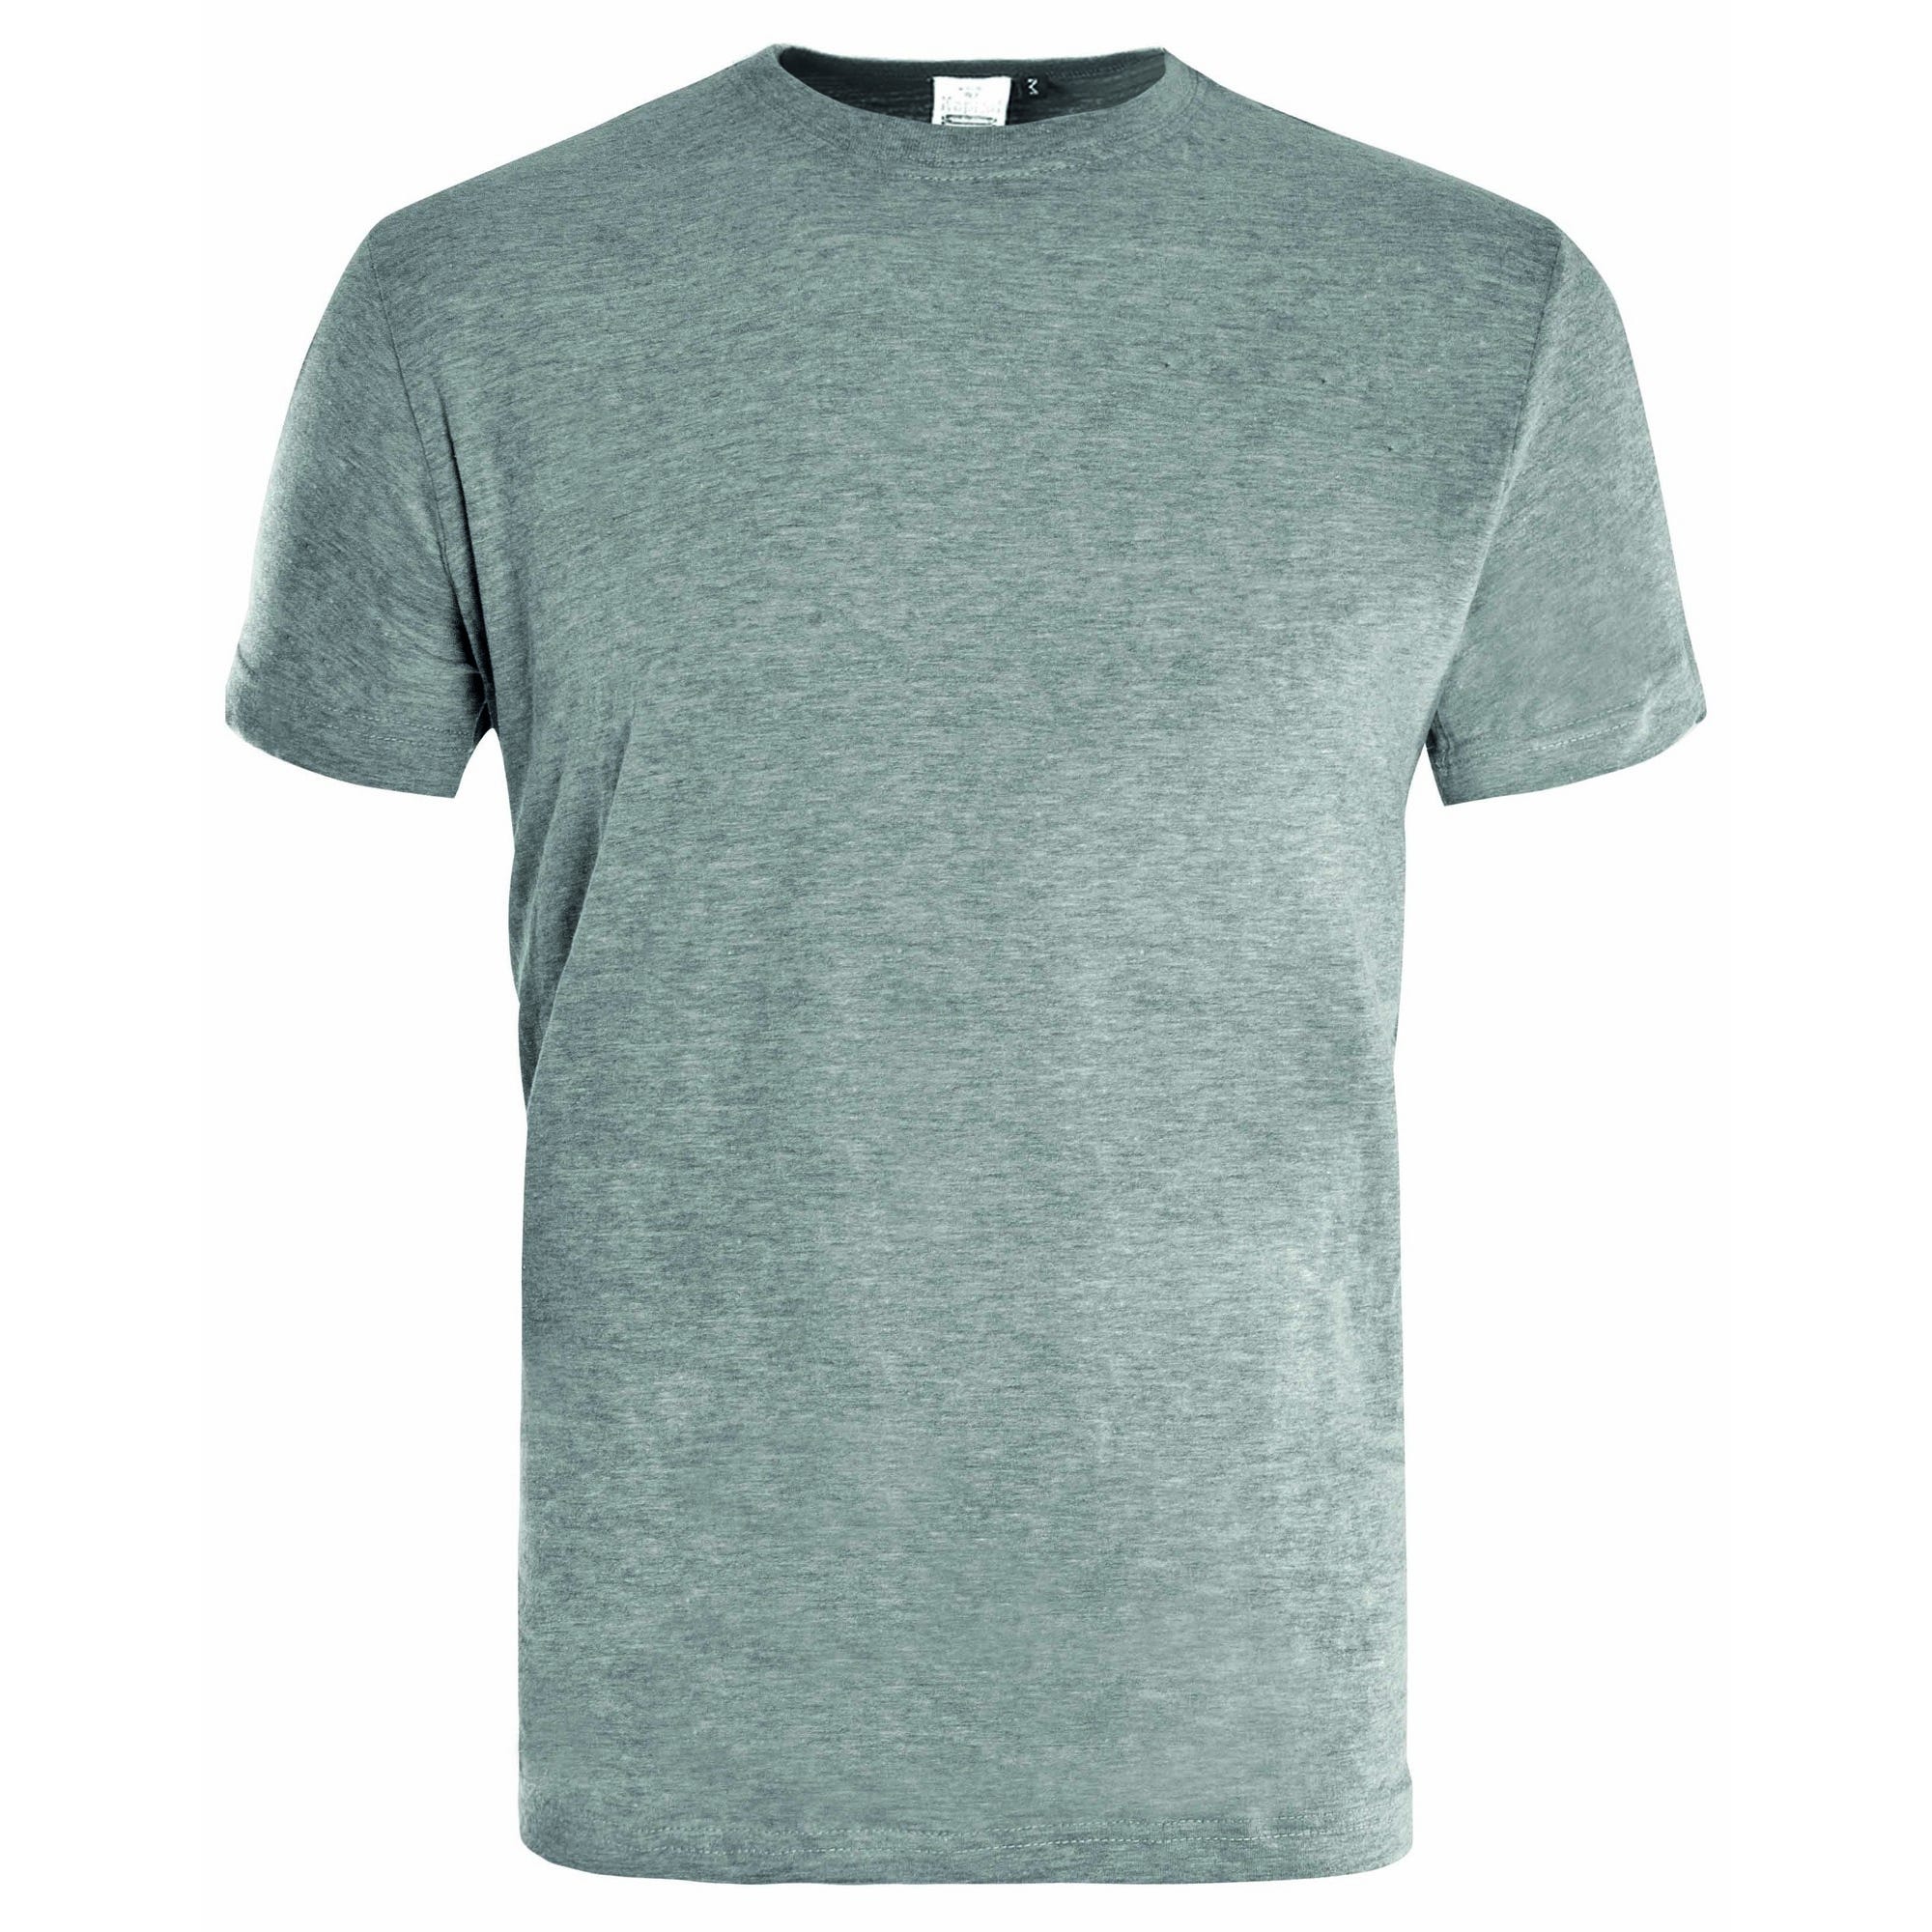 T-shirt de travail gris clair T.M - KAPRIOL 0